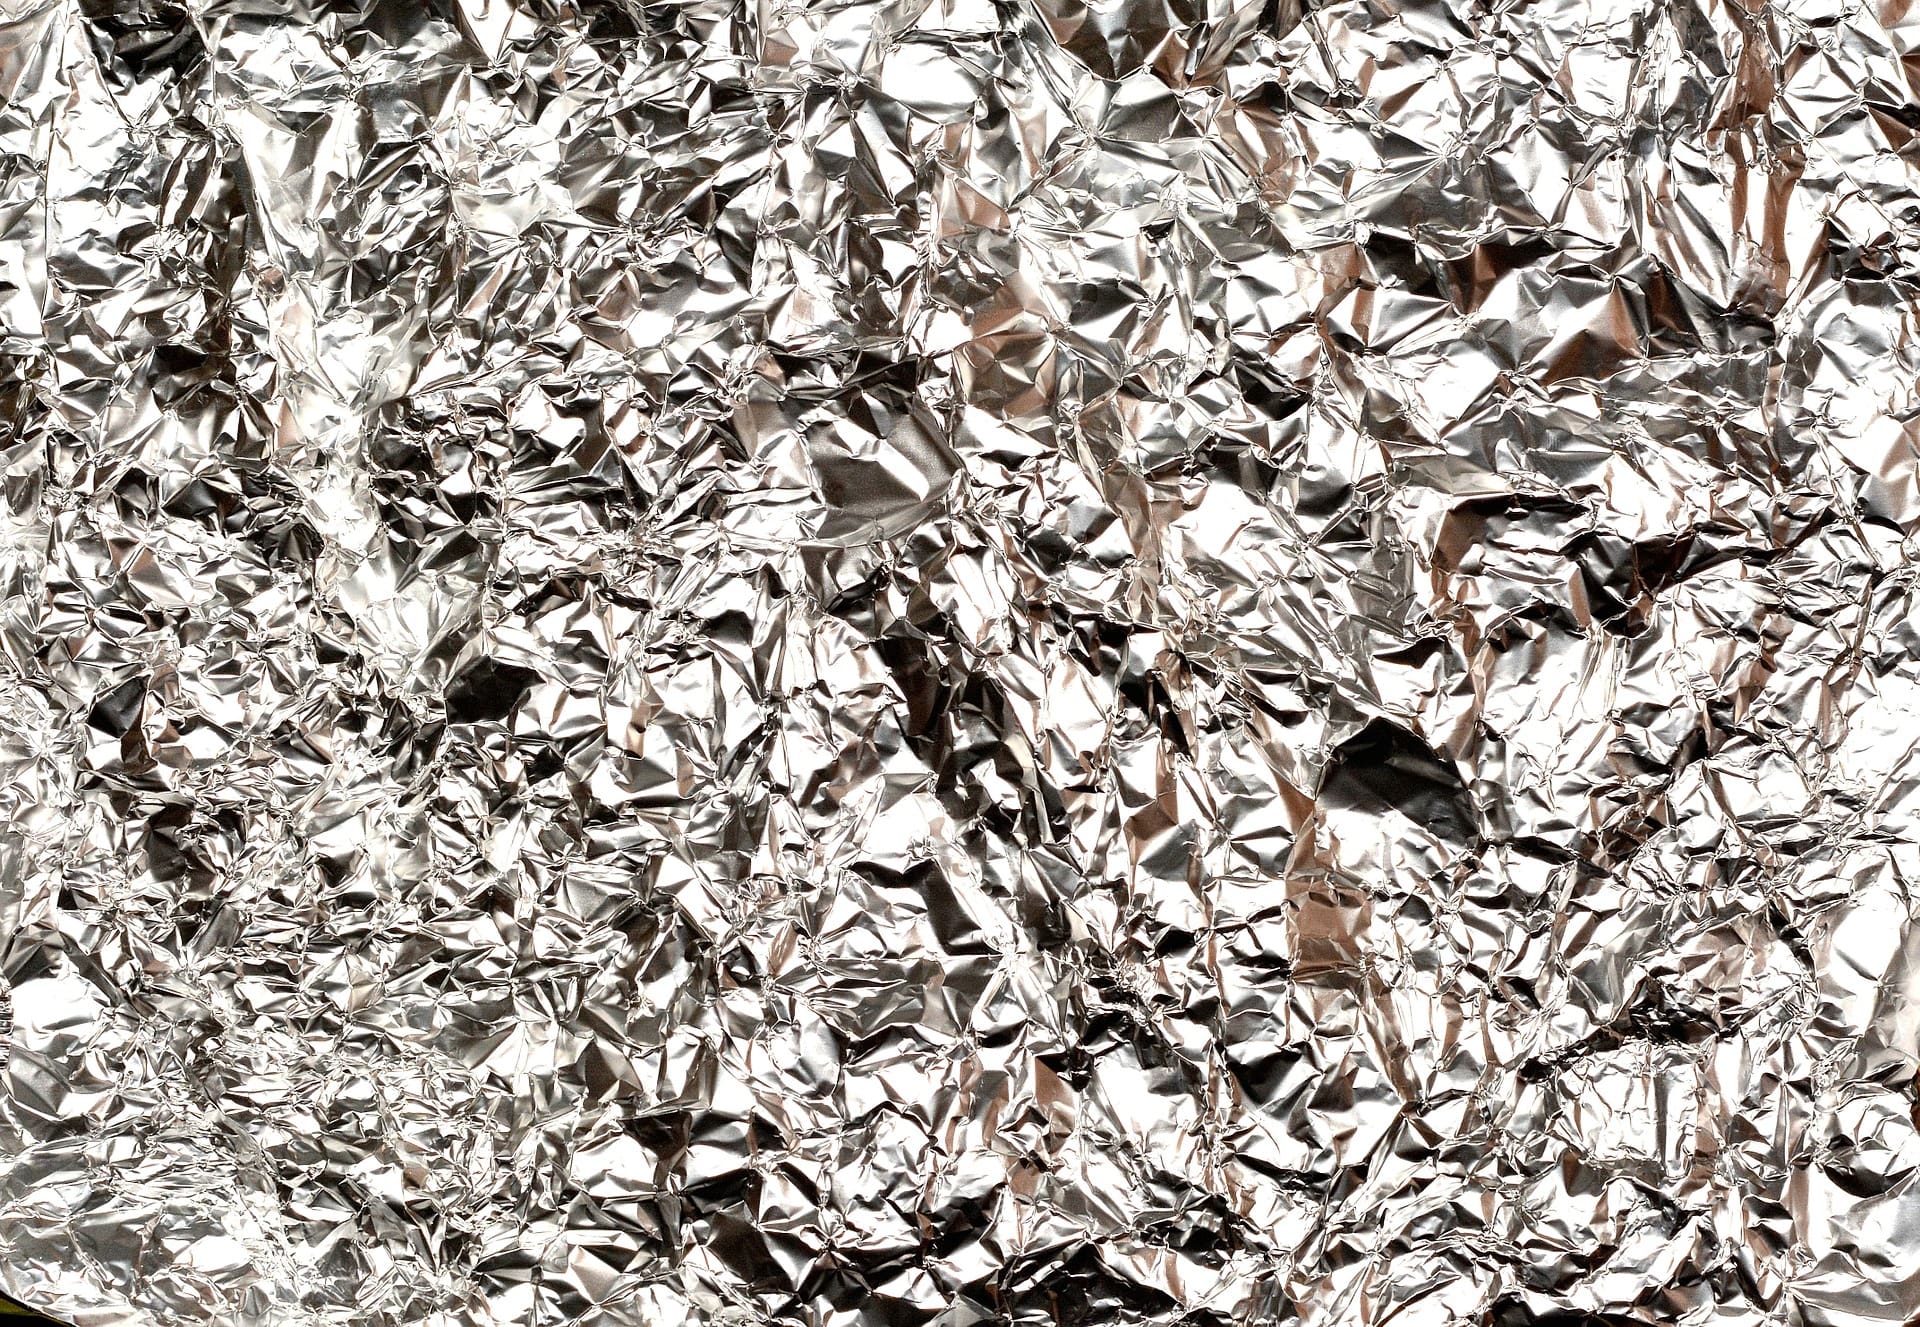 La feuille d'aluminium est idéale pour nettoyer et polir l'argent